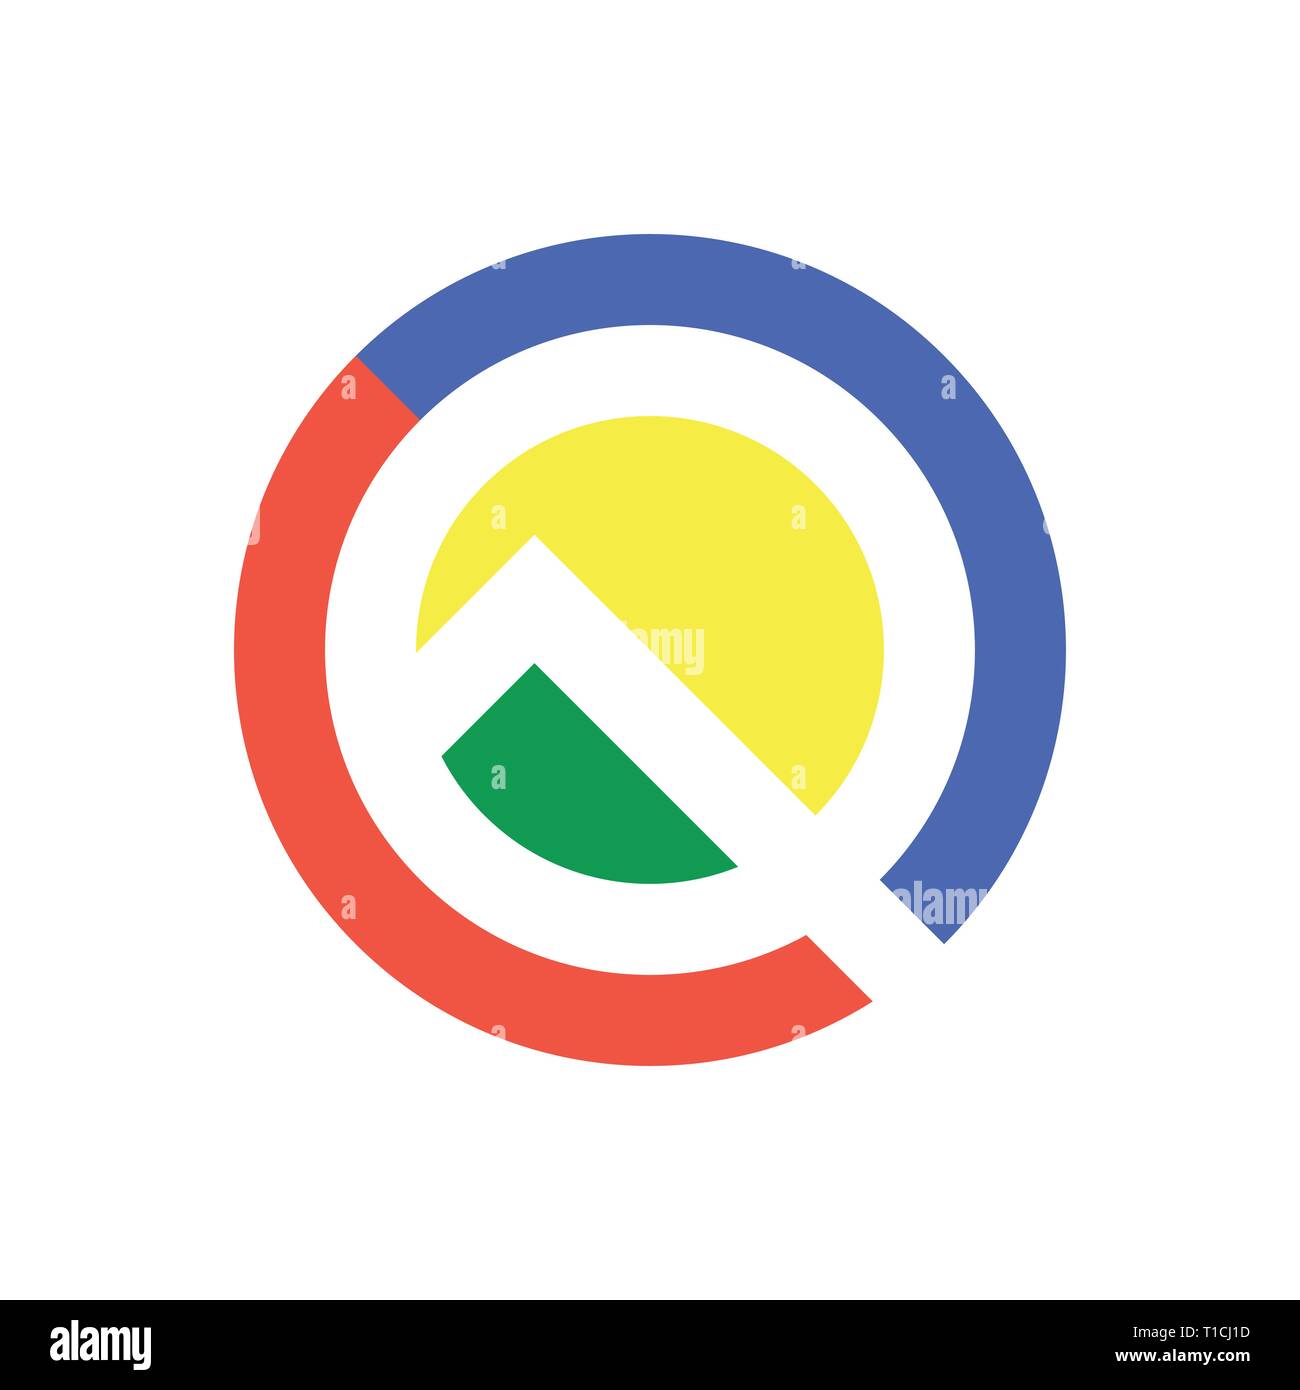 Lettera Q icona logo design elementi del modello. Android Q, Android 10 concetto. La sfumatura del colore in stile google. EPS 10 Illustrazione Vettoriale